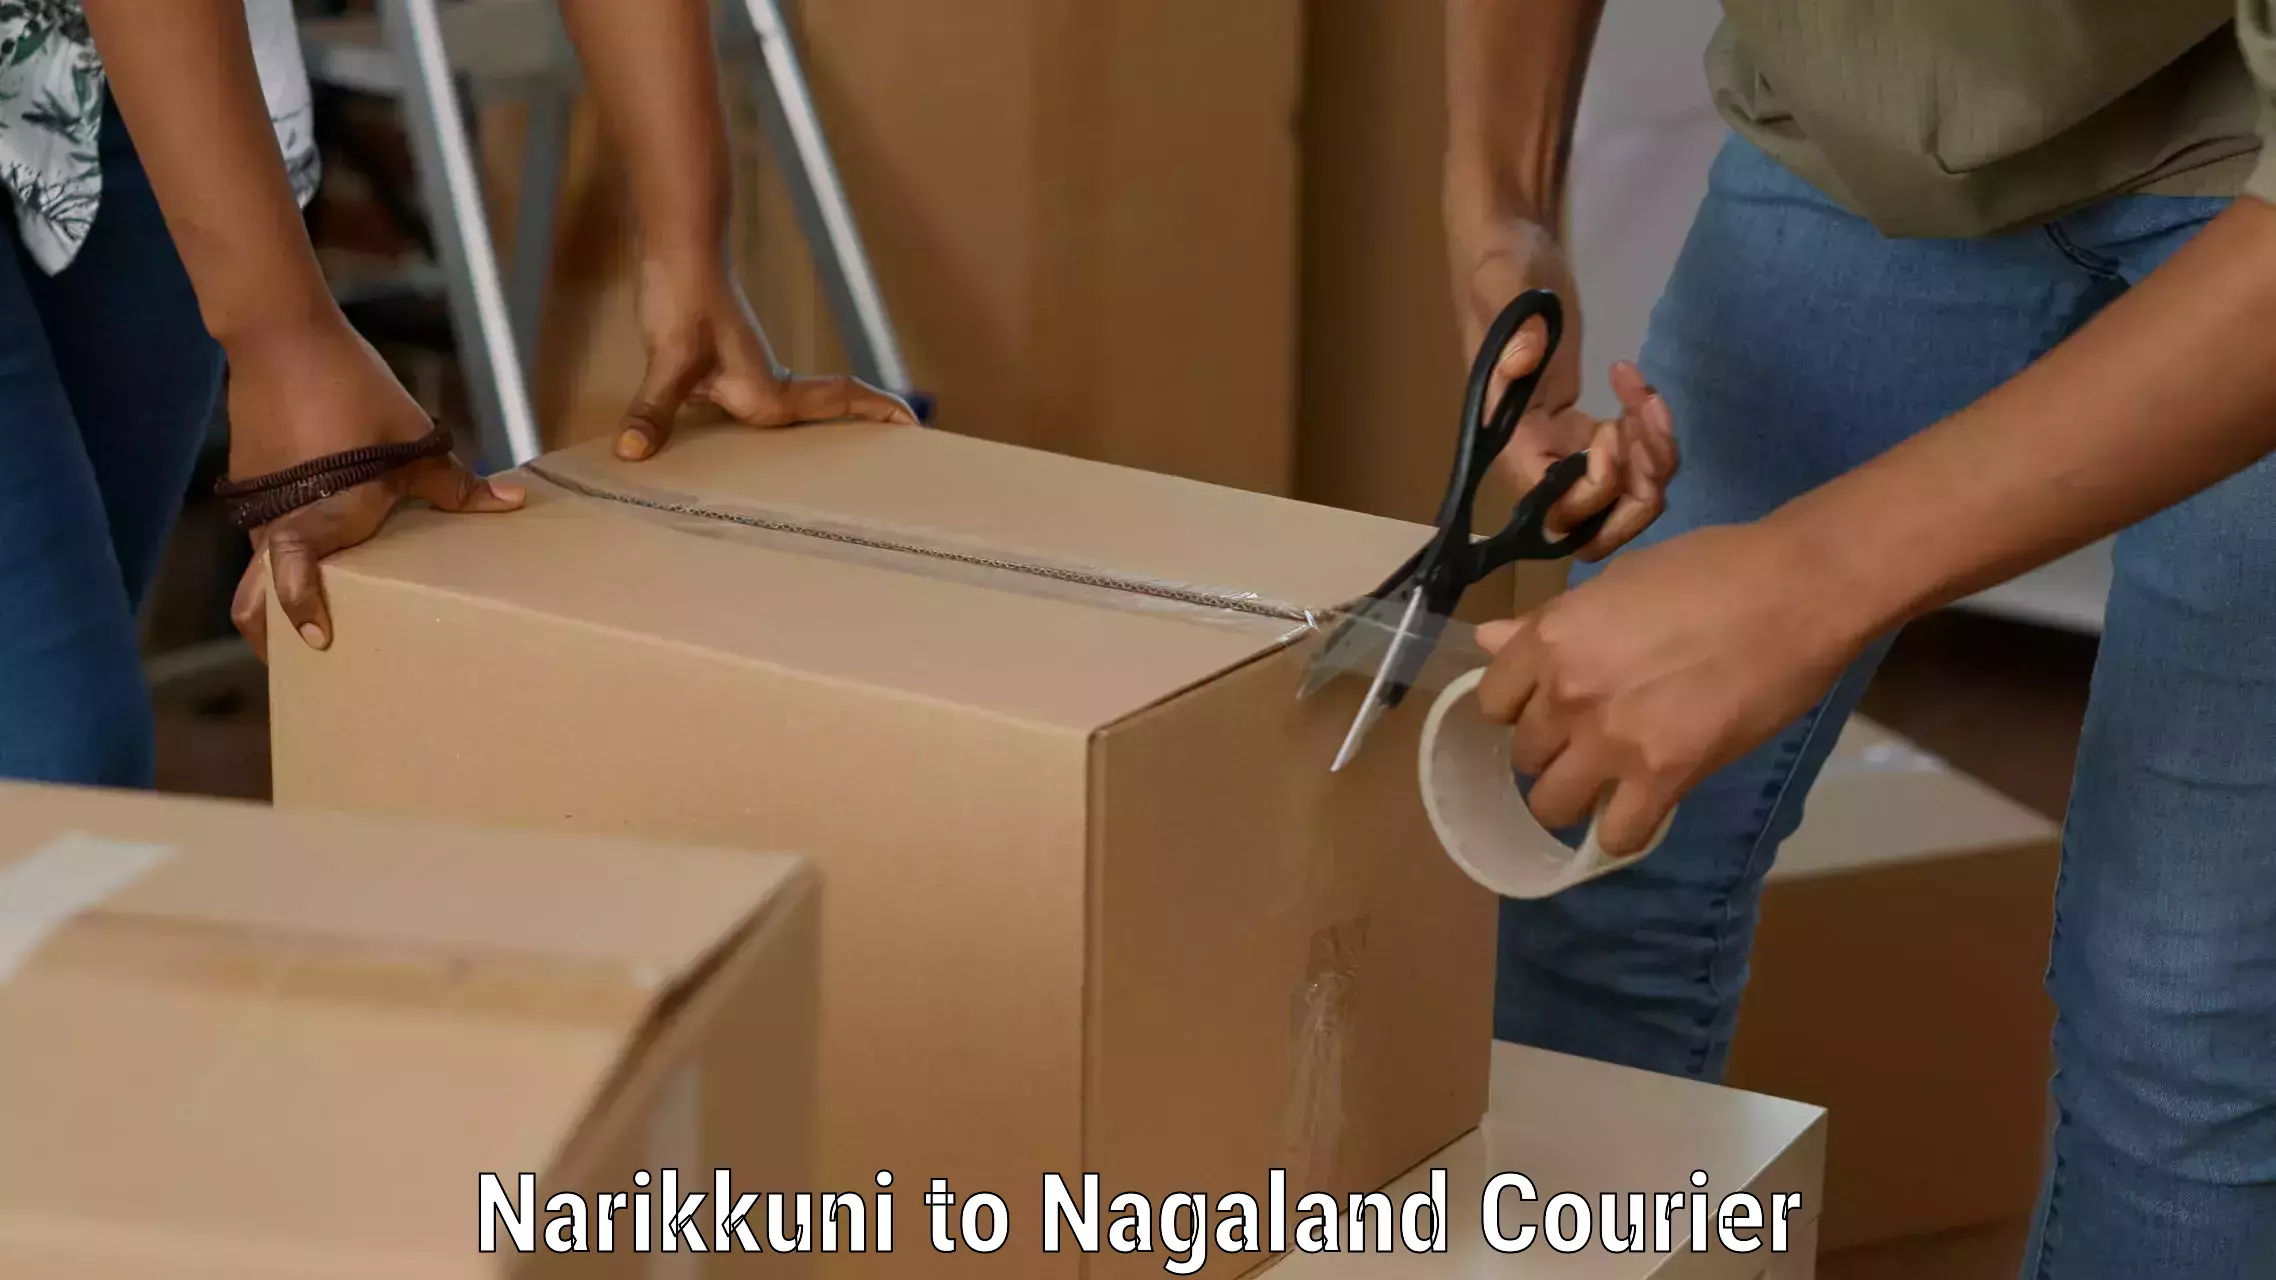 Efficient cargo handling in Narikkuni to Nagaland